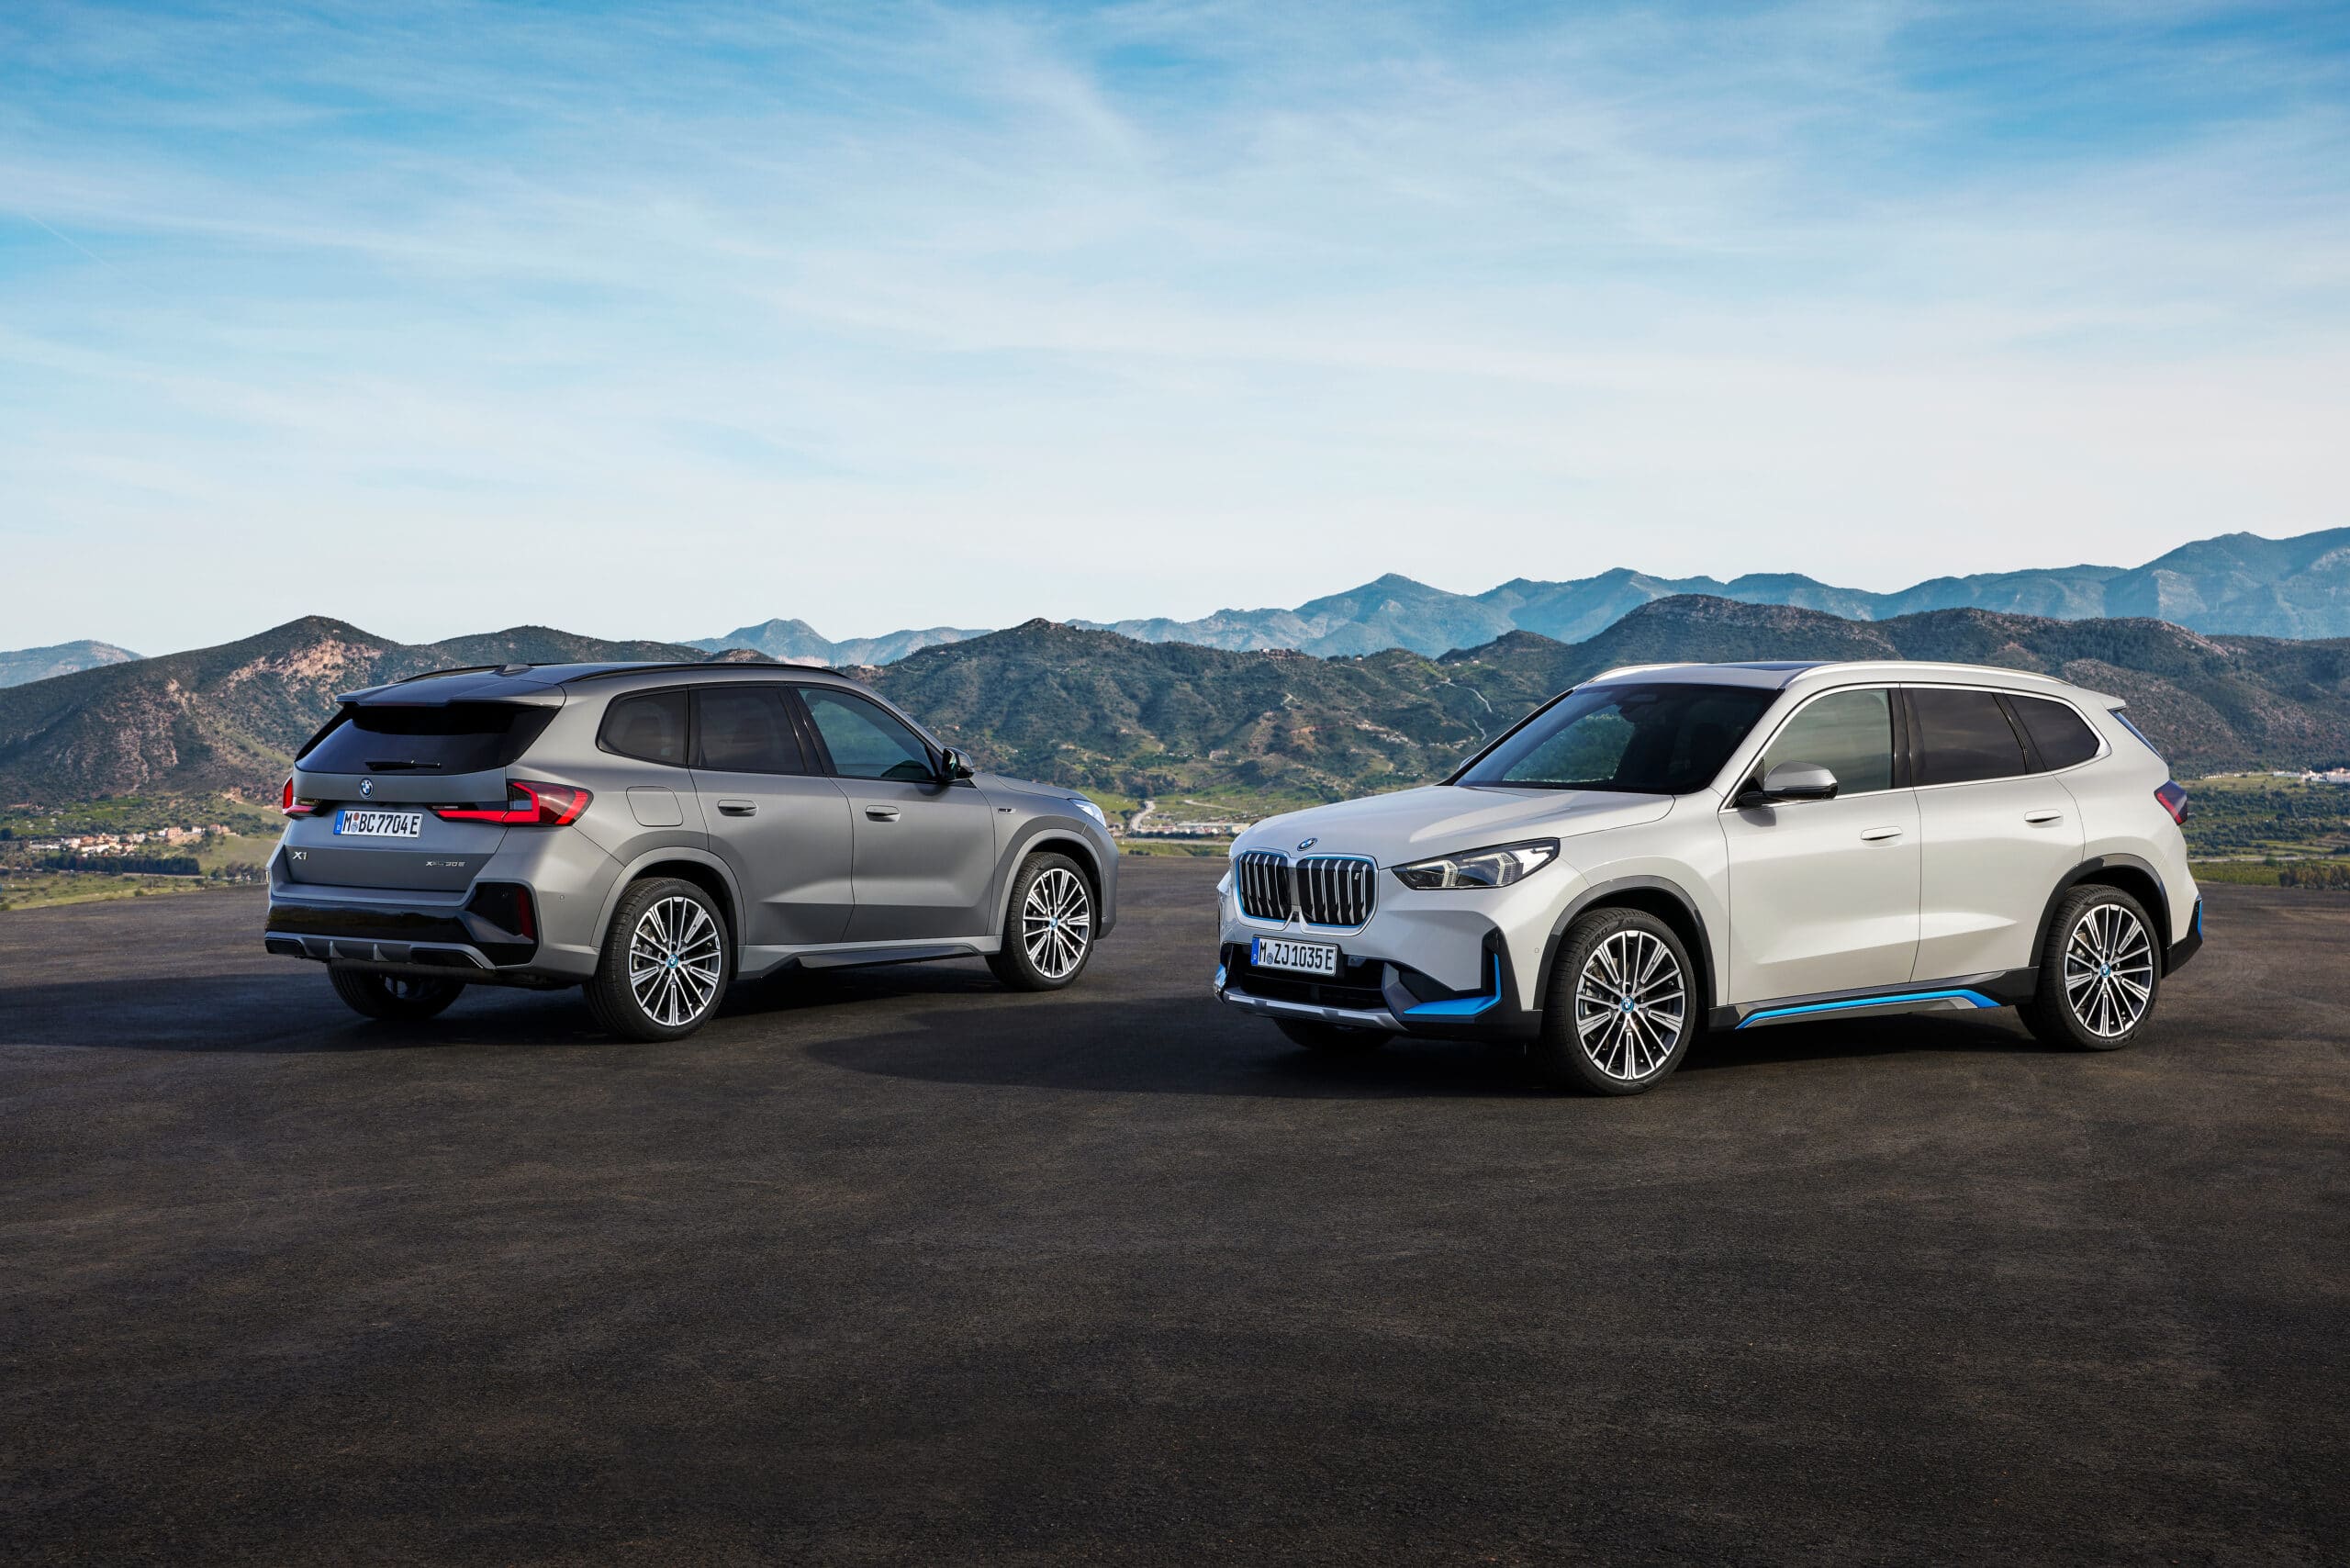 El BMW X1 llega en una nueva generación, incluido el BMW iX1 puramente eléctrico